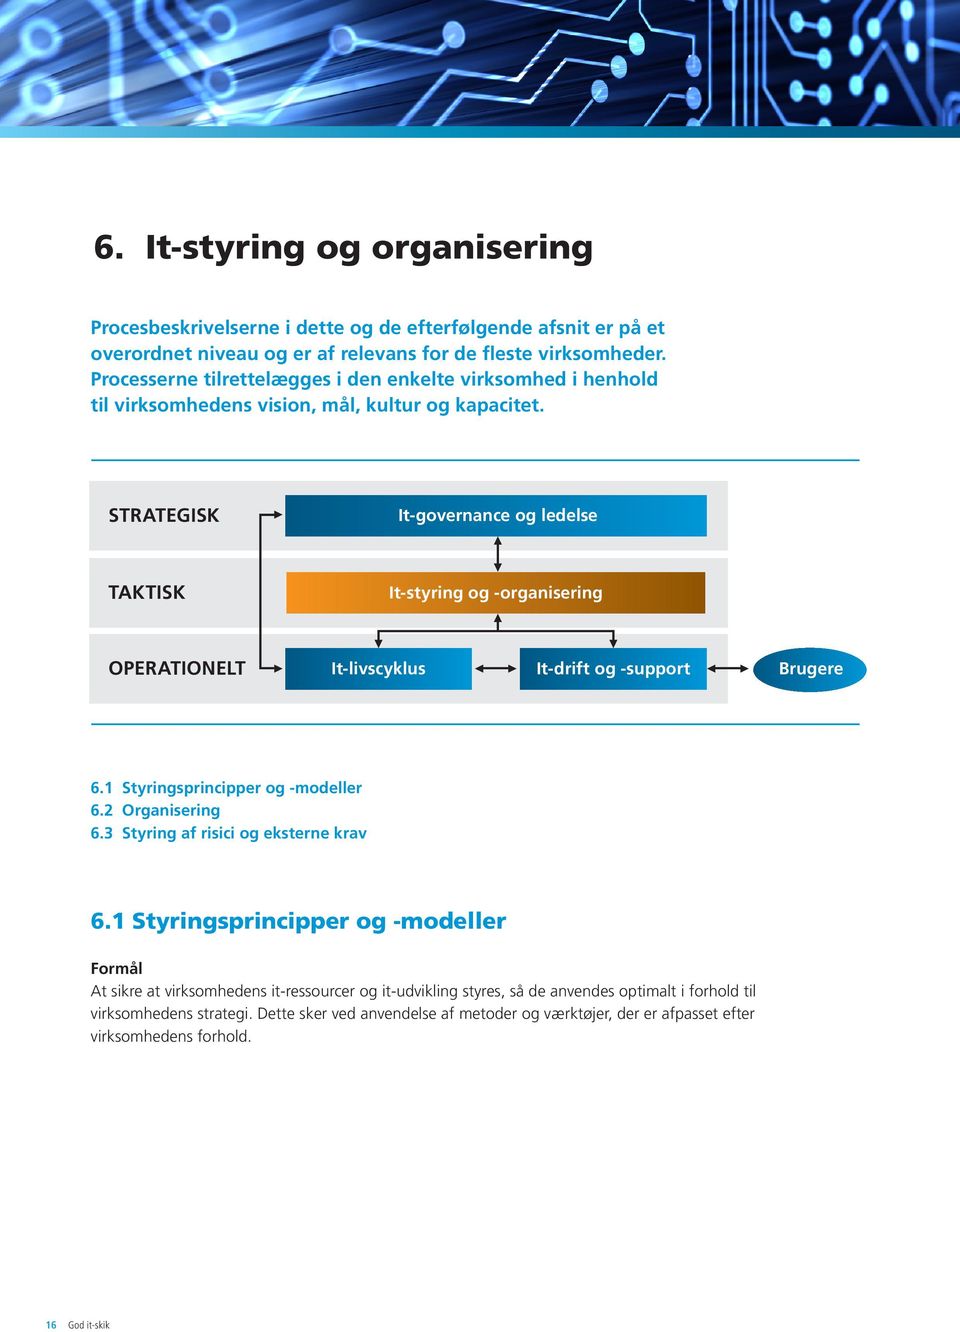 STRATEGISK It-governance og ledelse TAKTISK It-styring og -organisering OPERATIONELT It-livscyklus It-drift og -support Brugere 6.1 Styringsprincipper og -modeller 6.2 Organisering 6.